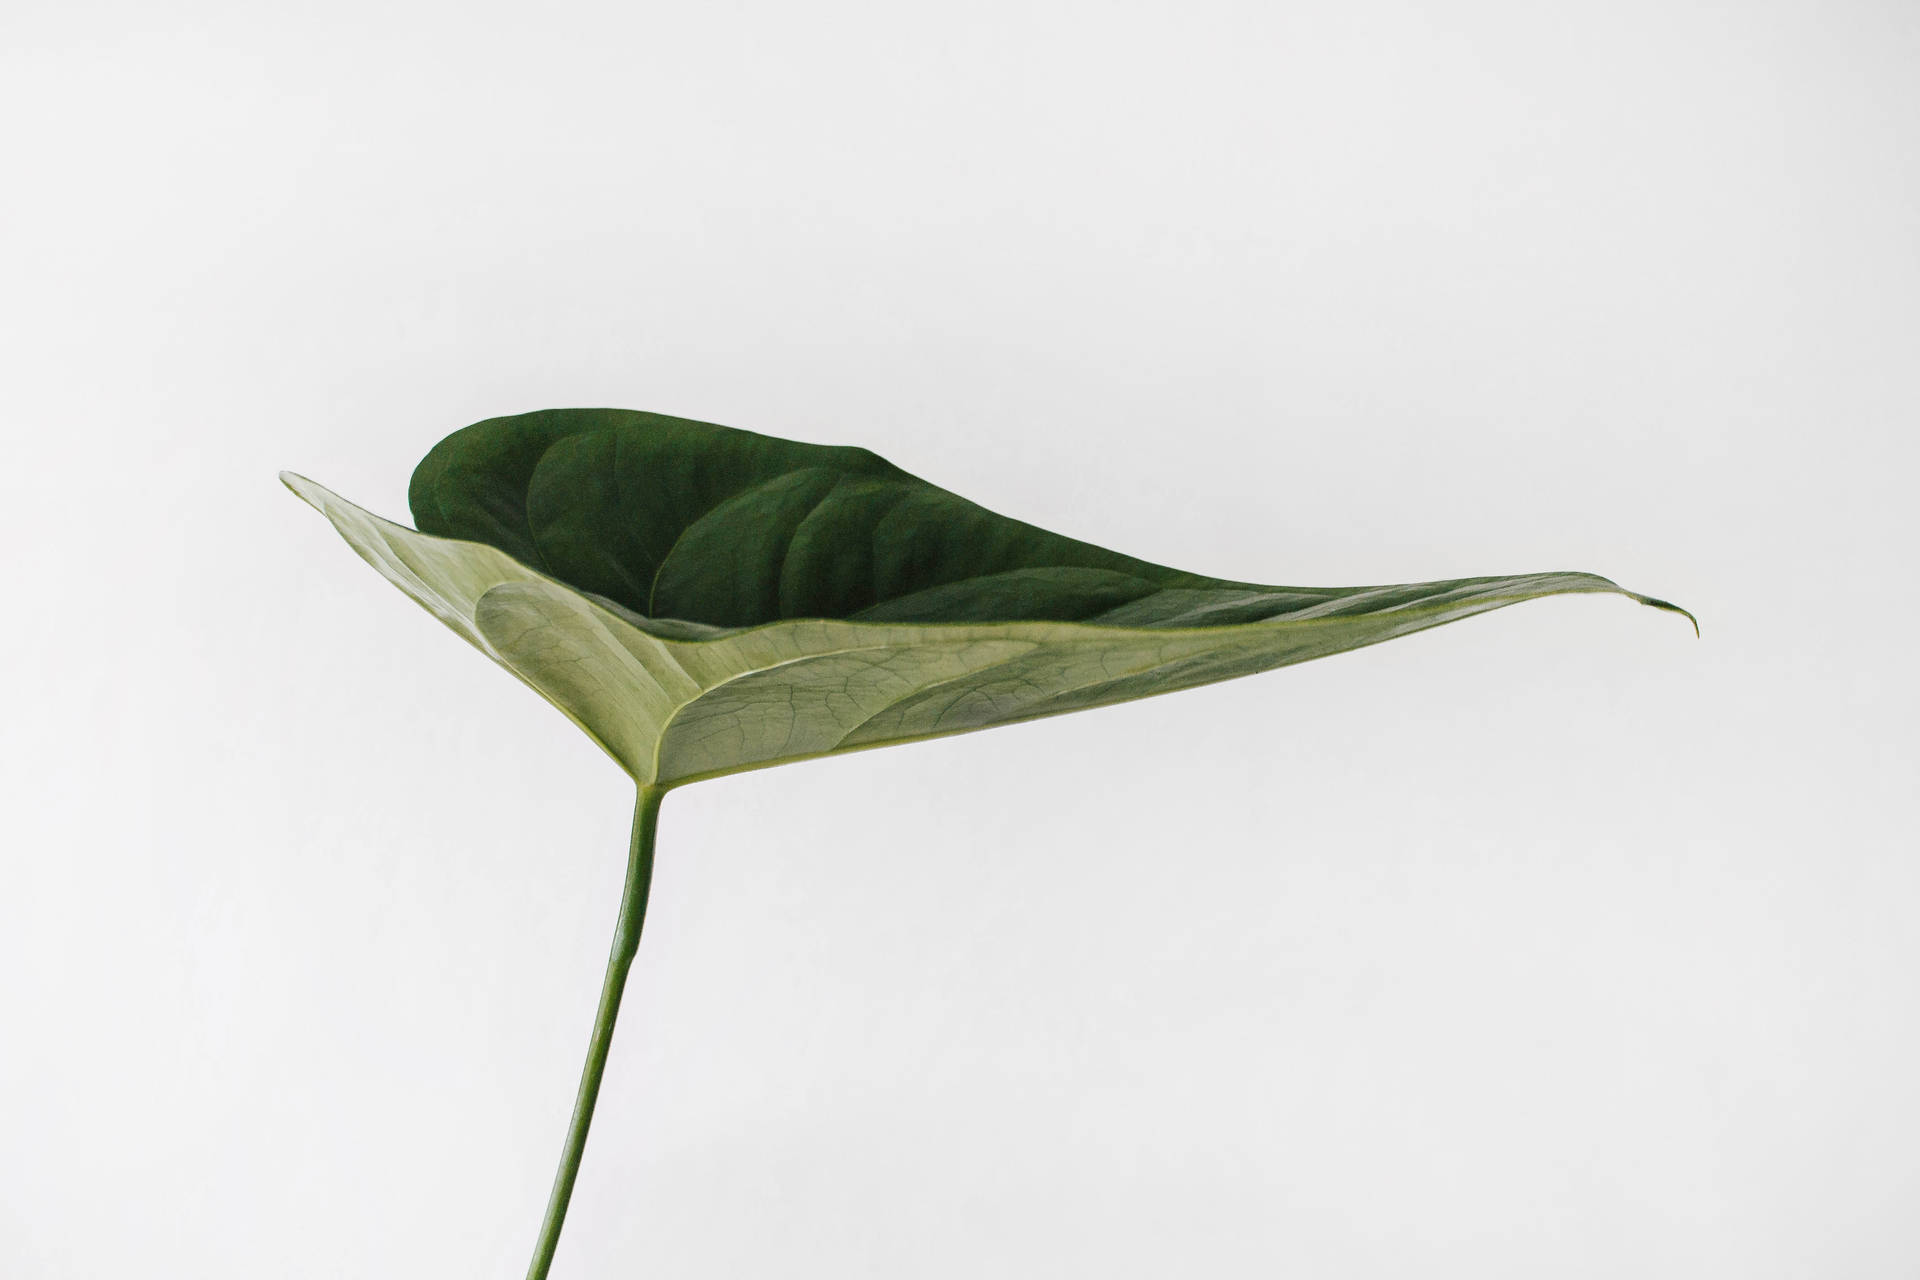 Aesthetic Minimalist Leaf